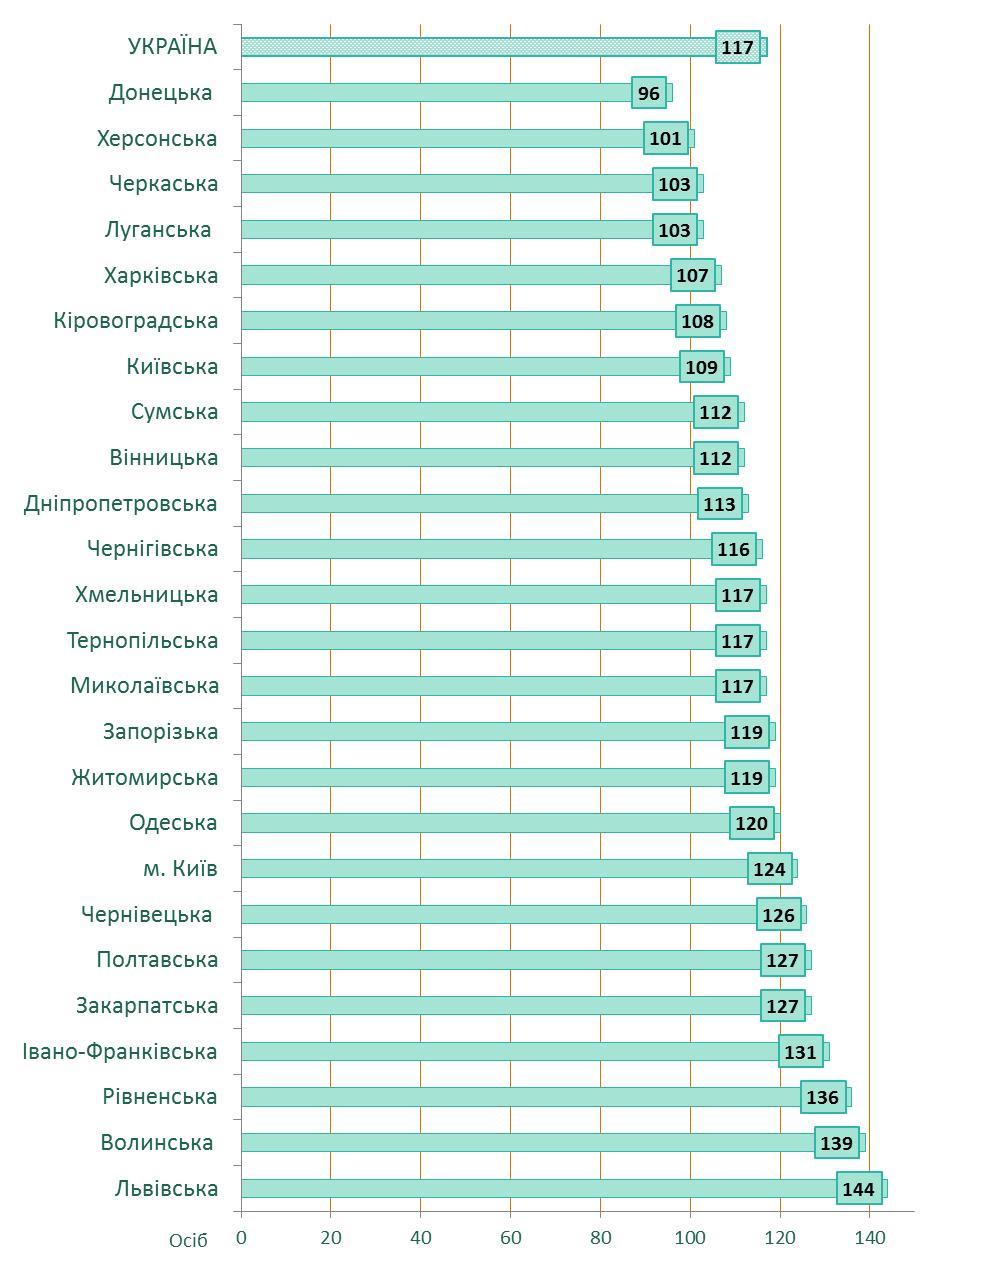 Кількість дітей на 100 місць в ДНЗ України (регіональний профіль), дані Держстат